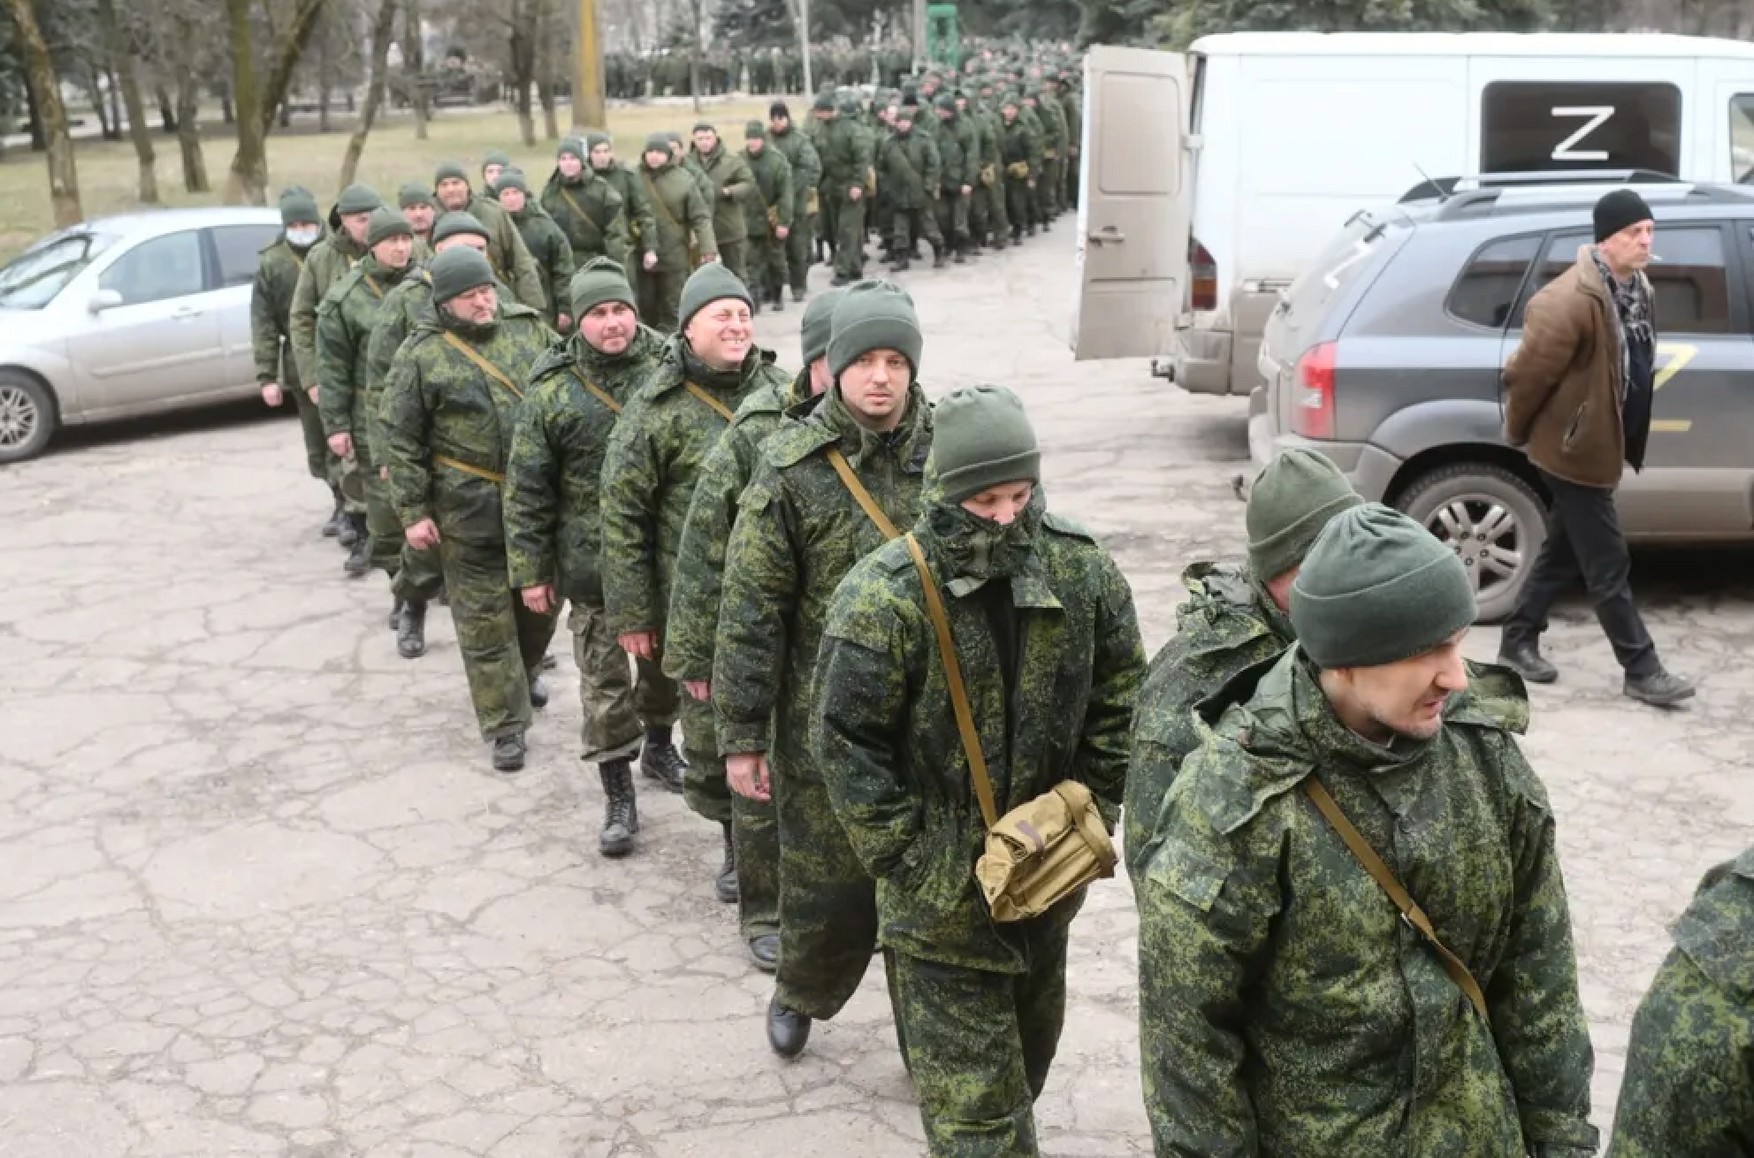 Иркутские мобилизованные рассказали, что их отправляют на штурм без подготовки и угрожают бросить на передовую как расходный материал